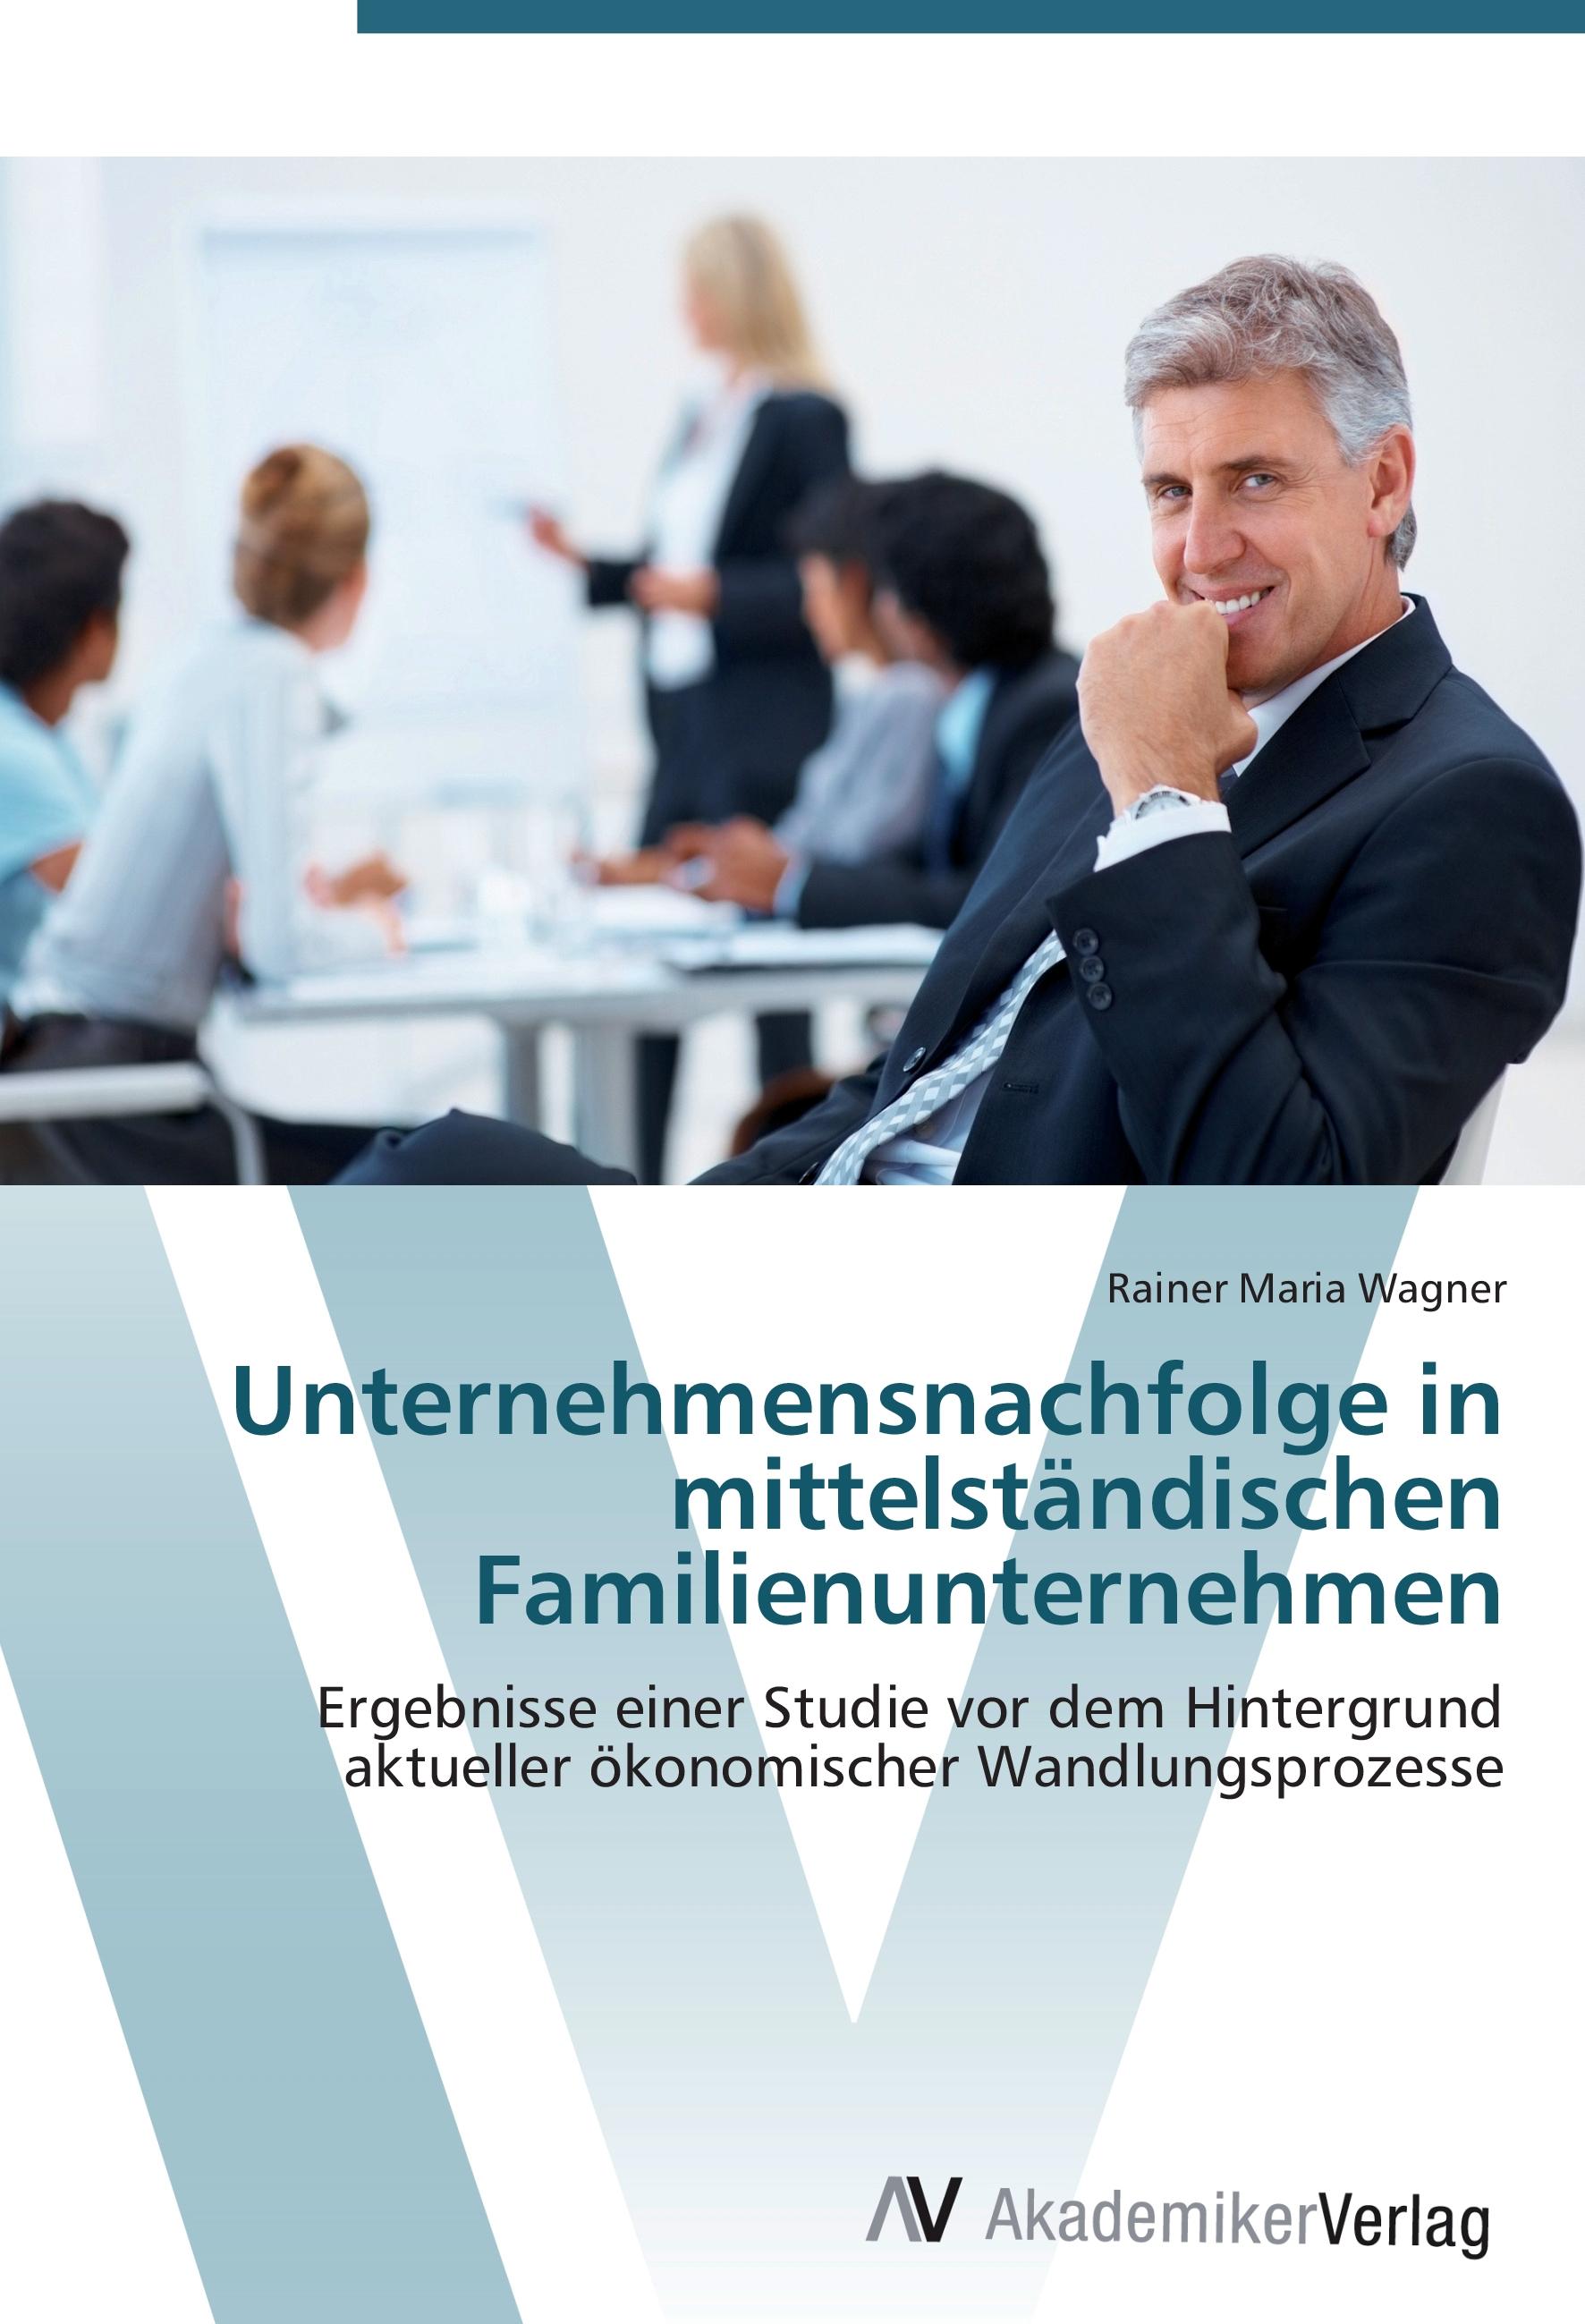 Unternehmensnachfolge in mittelstaendischen Familienunternehmen - Rainer Maria Wagner